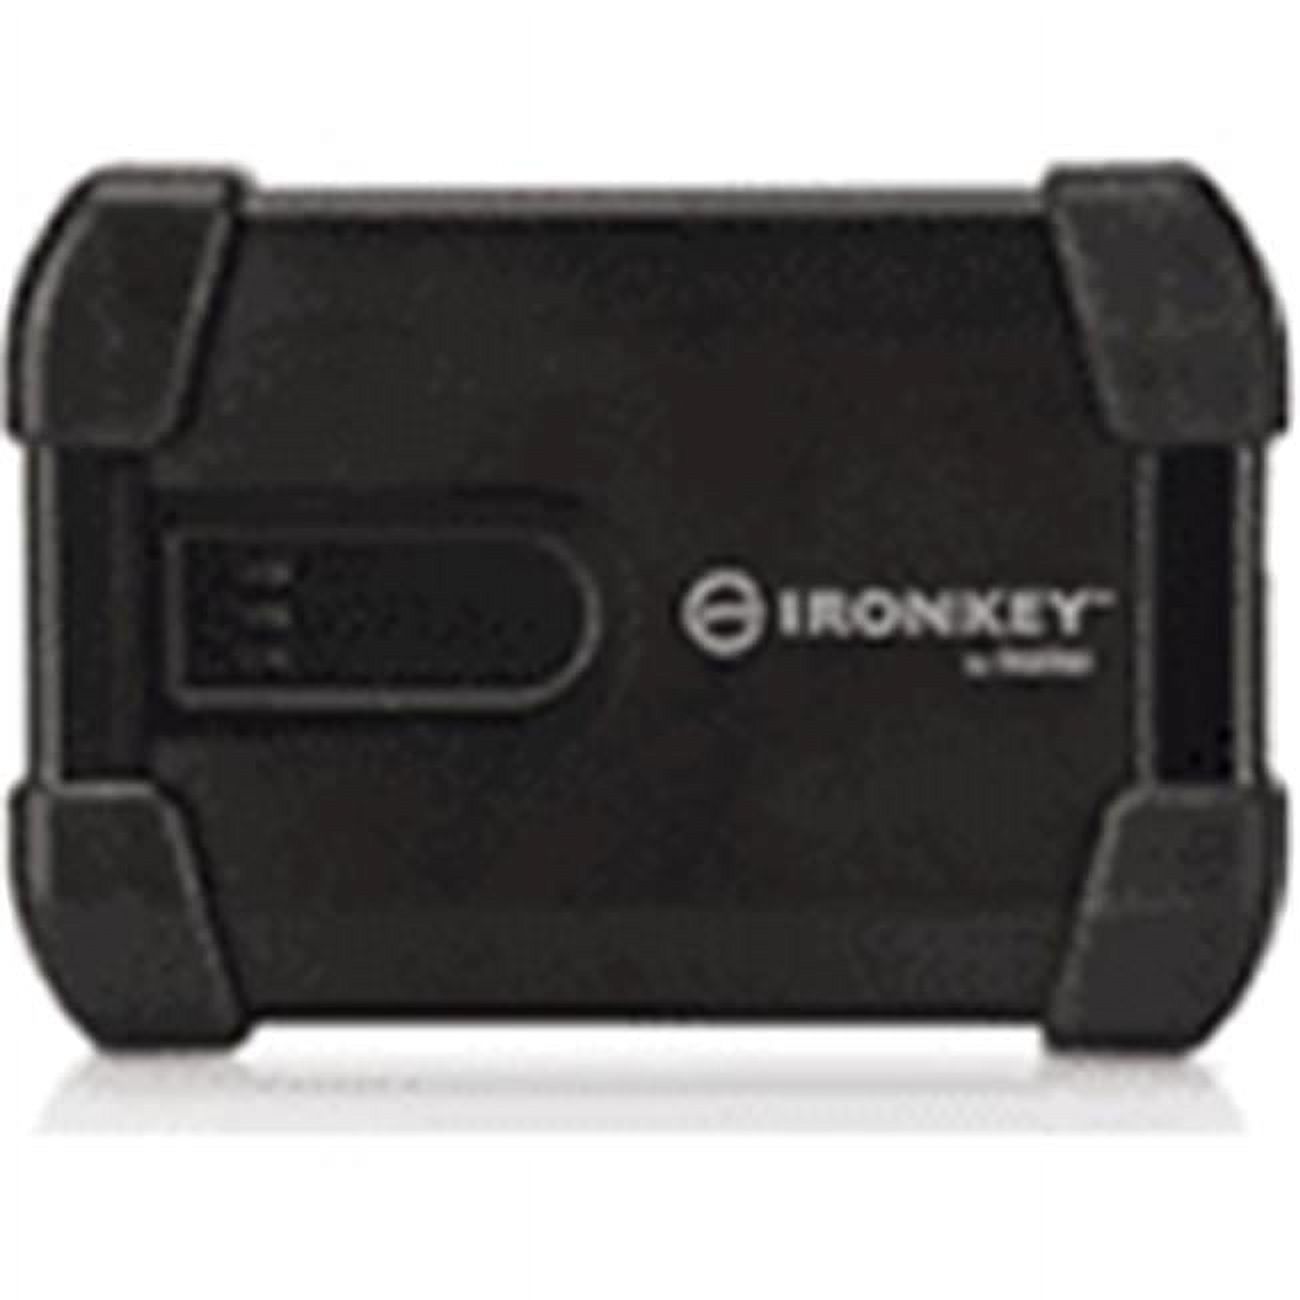 Ironkey  500gb Usb 3.0 Ehdd Basic - Black - image 1 of 1